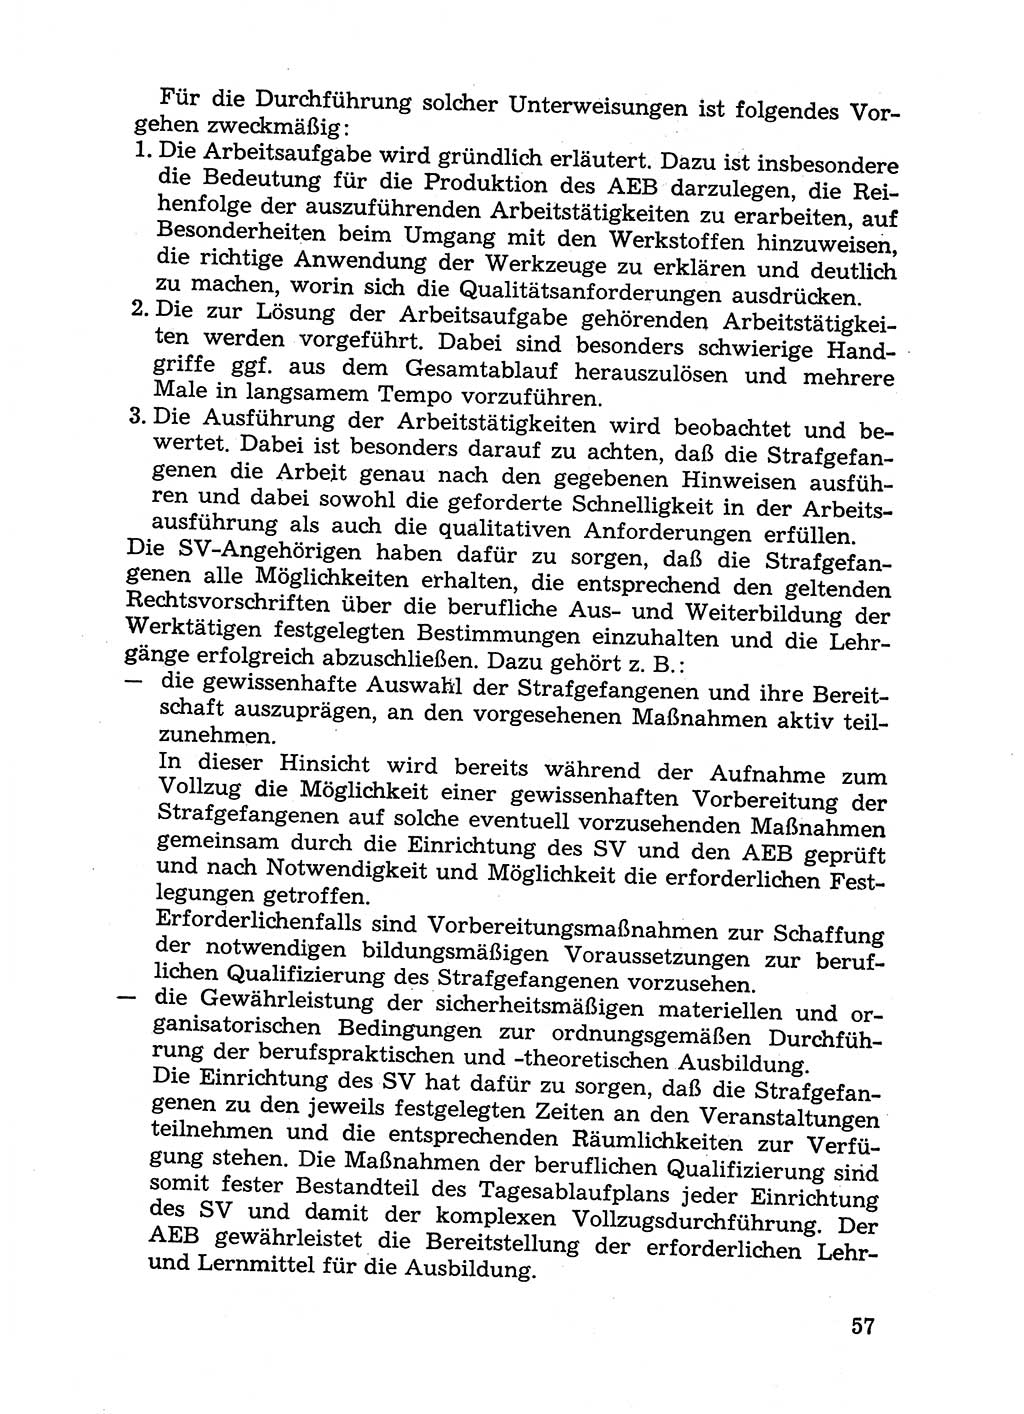 Handbuch für Betriebsangehörige, Abteilung Strafvollzug (SV) [Ministerium des Innern (MdI) Deutsche Demokratische Republik (DDR)] 1981, Seite 57 (Hb. BA Abt. SV MdI DDR 1981, S. 57)